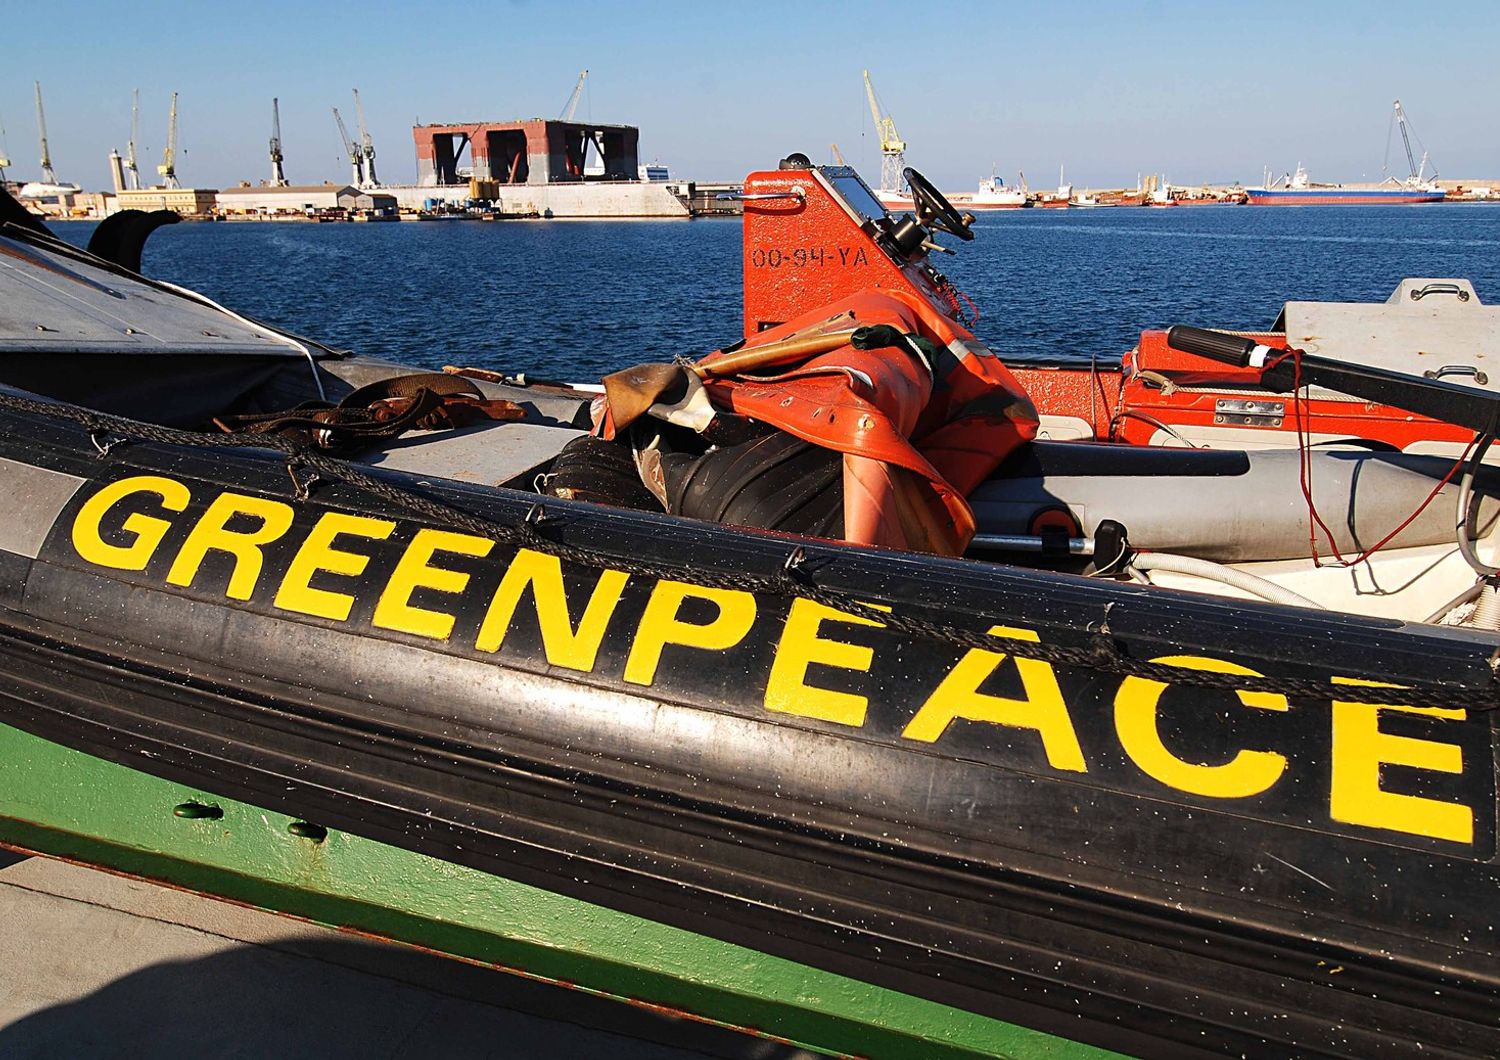 &nbsp;Greenpeace (Agf)